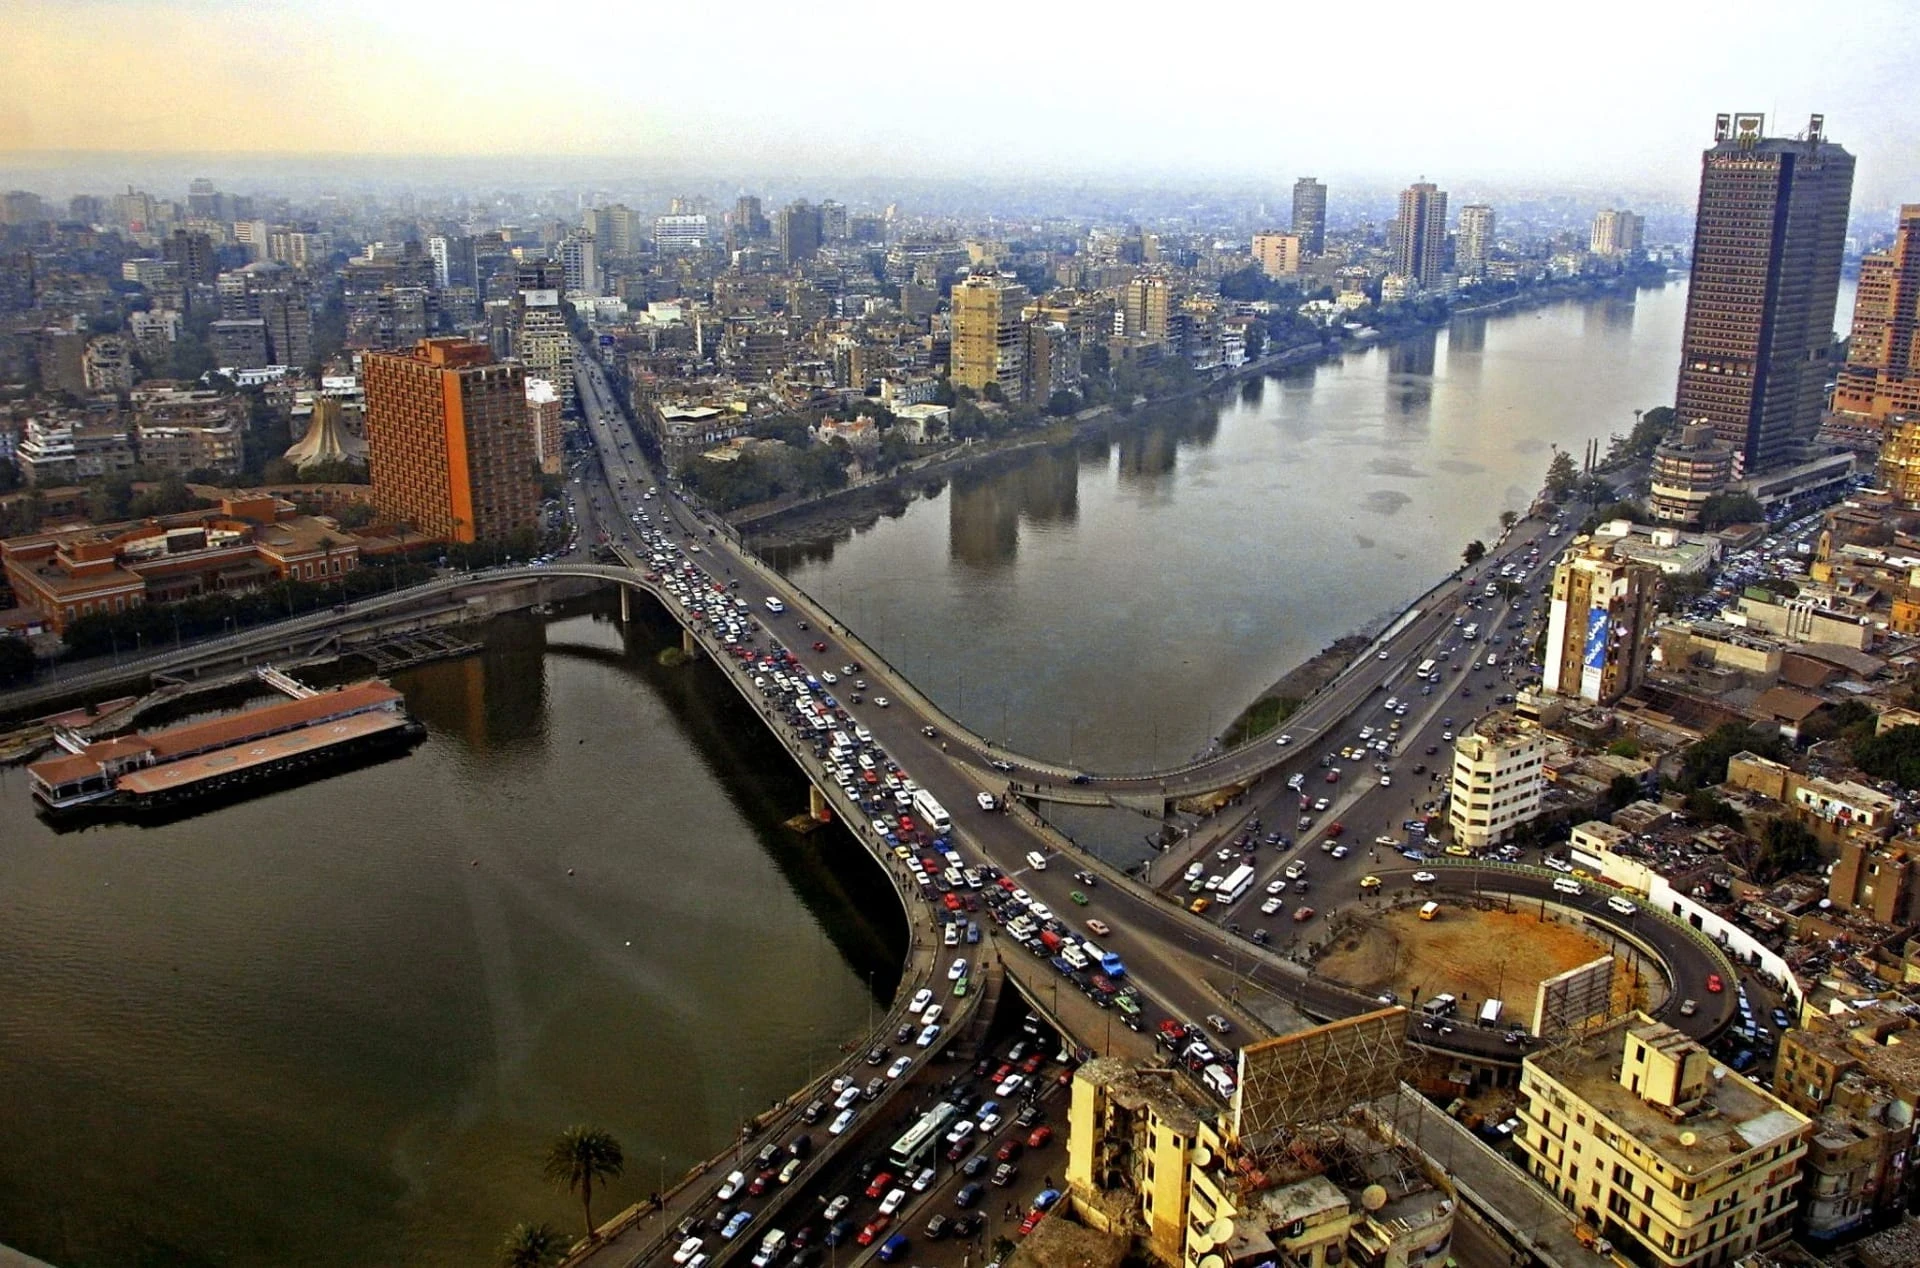 تحت وطأة الغلاء وتدهور الأجور: تحديات تحجب آفاق الشباب في مصر